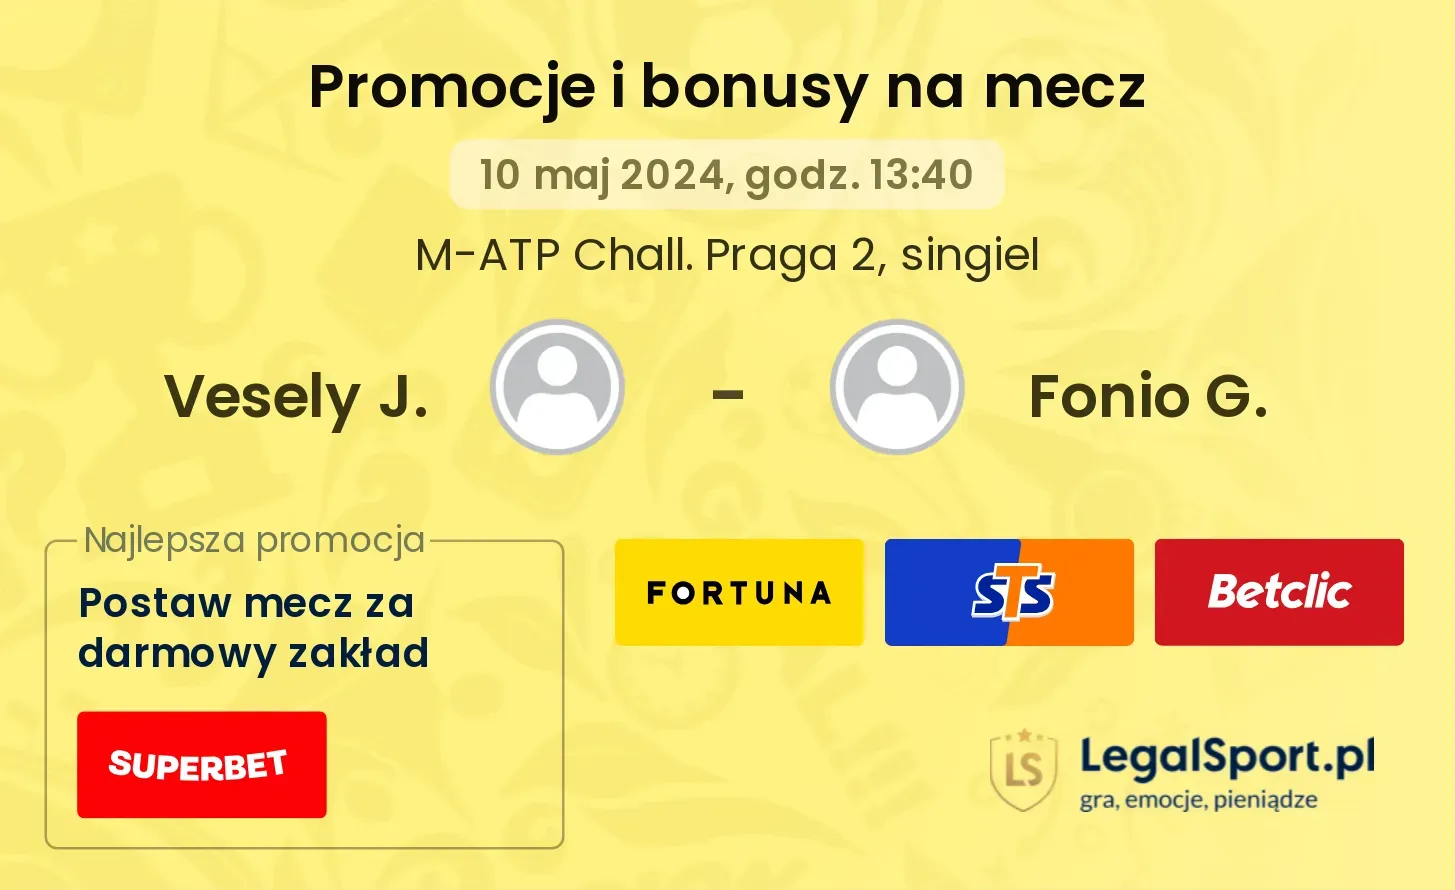 Vesely J. - Fonio G. promocje bonusy na mecz